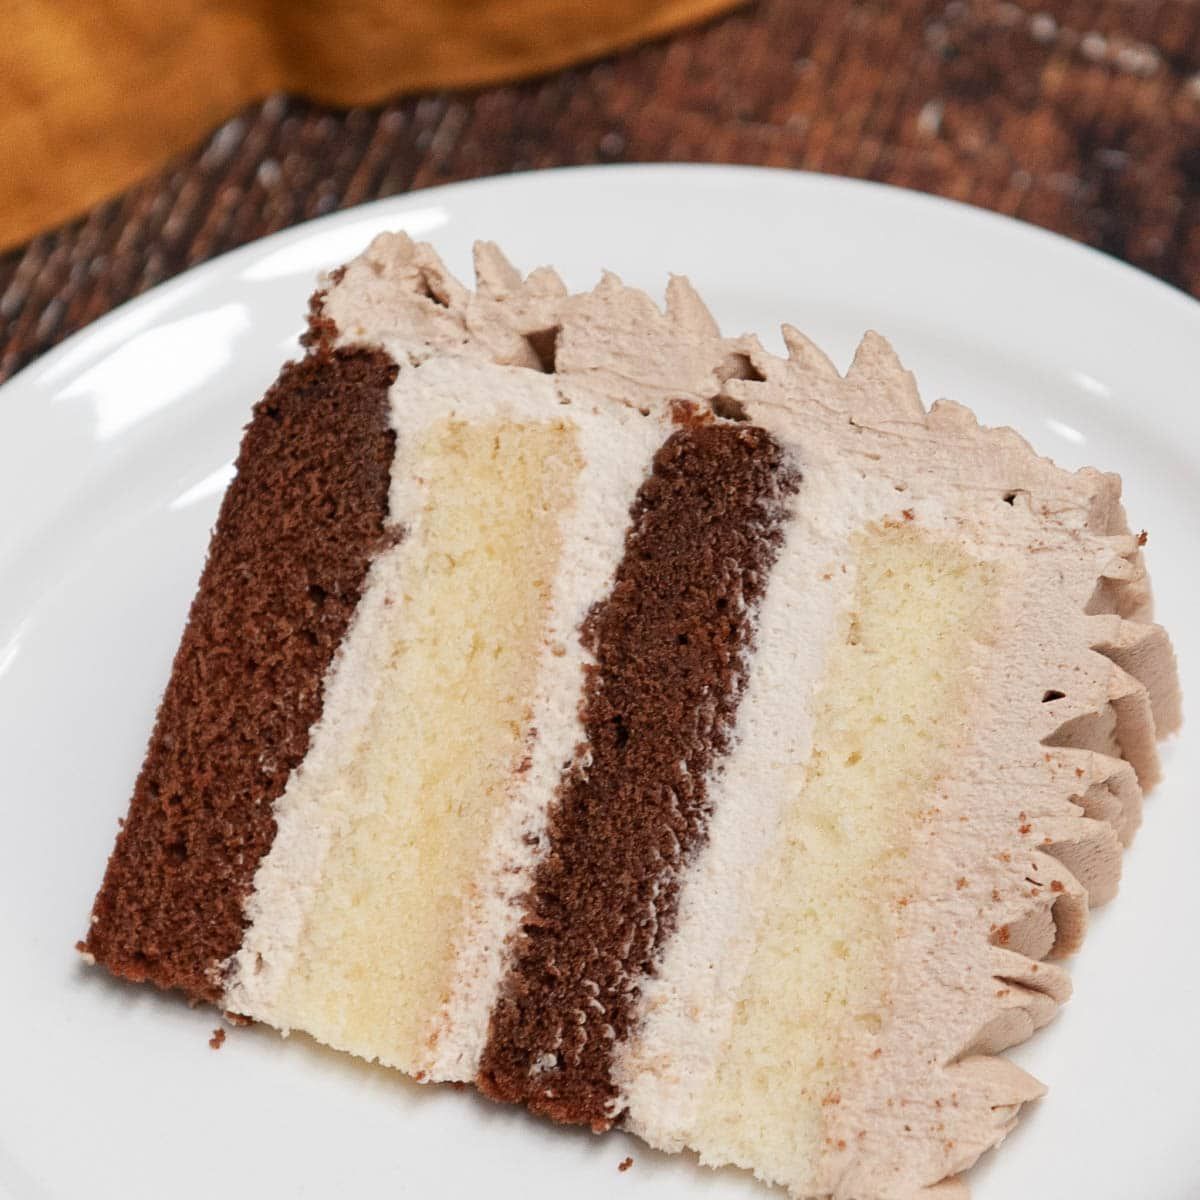 פרוסת עוגת שוקולד וניל עם קצפת שוקולד על צלחת לבנה